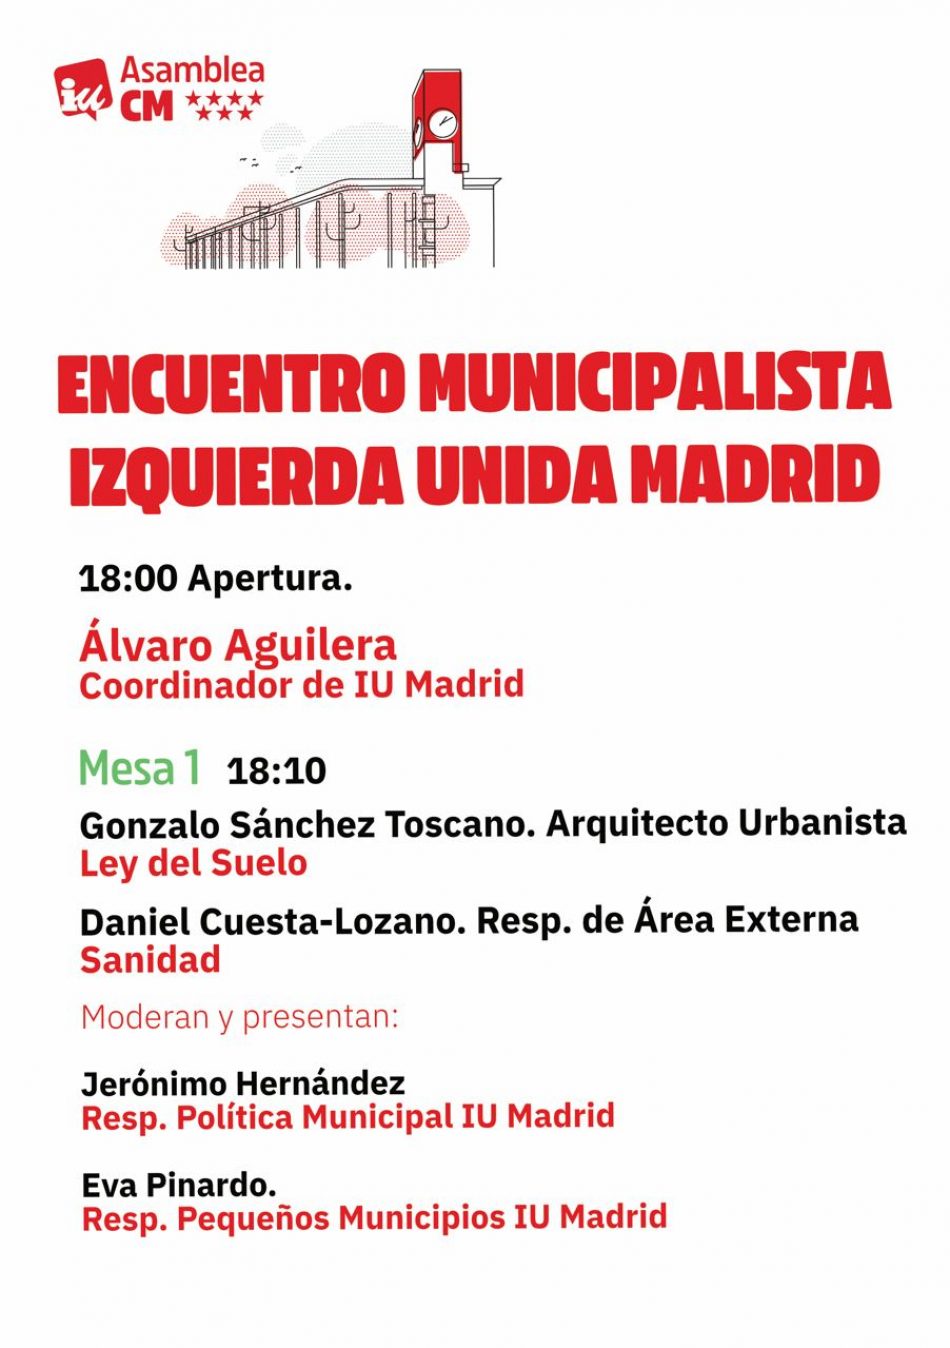 Encuentro municipalista en la Asamblea de Madrid para hablar sobre las políticas depredadoras del PP y como afecta a los municipios